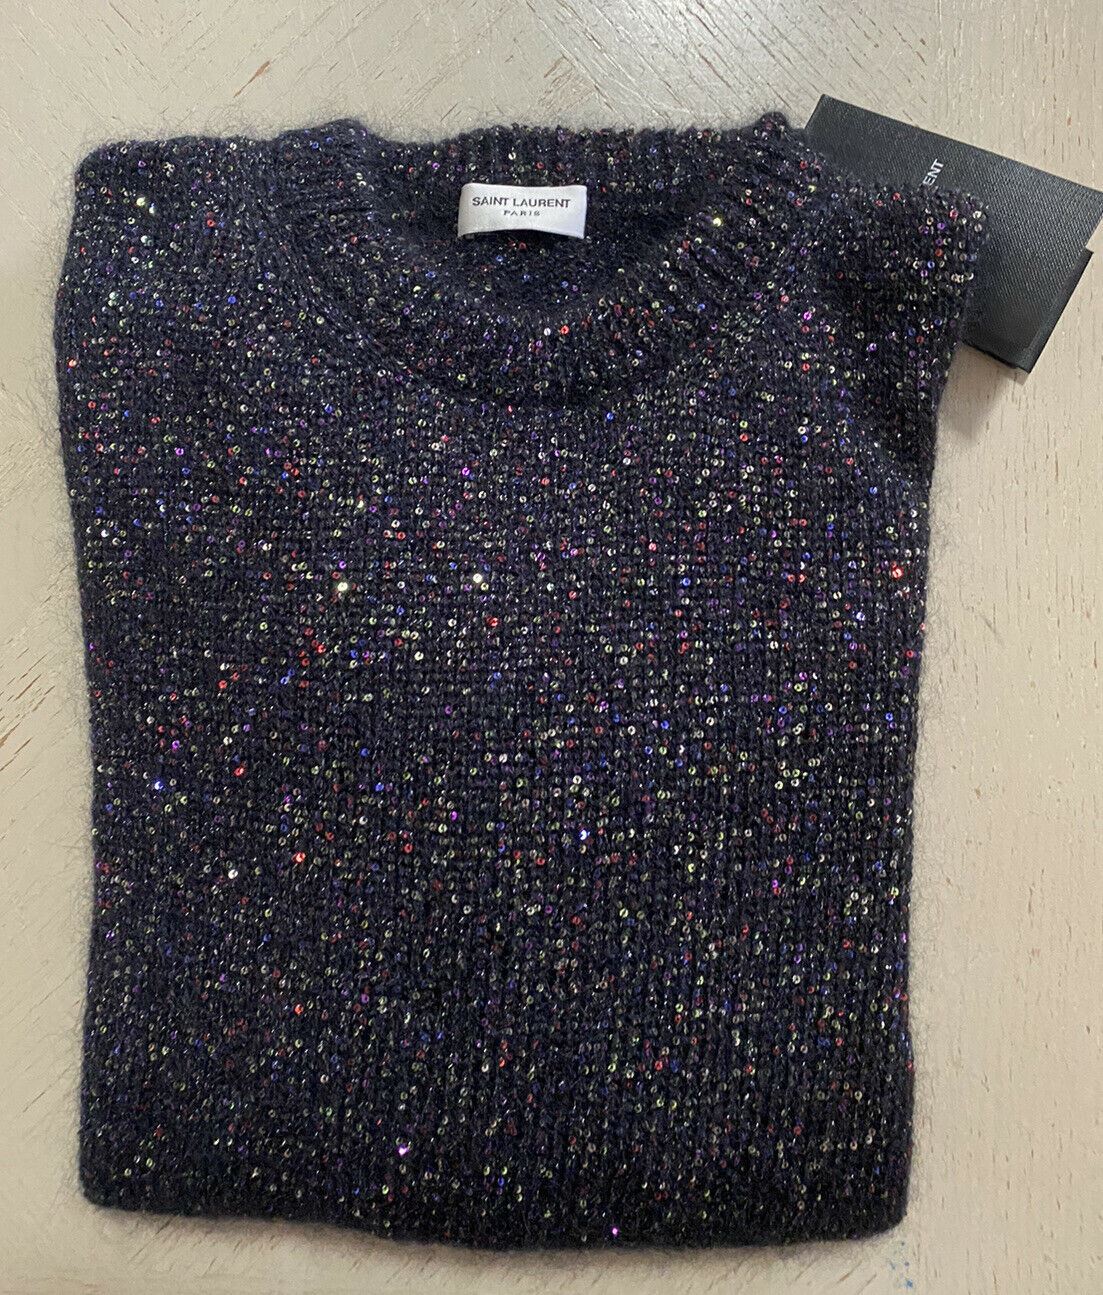 NWT $1590 Saint Laurent Мужской свитер с круглым вырезом, черный/разноцветный, размер L, Италия